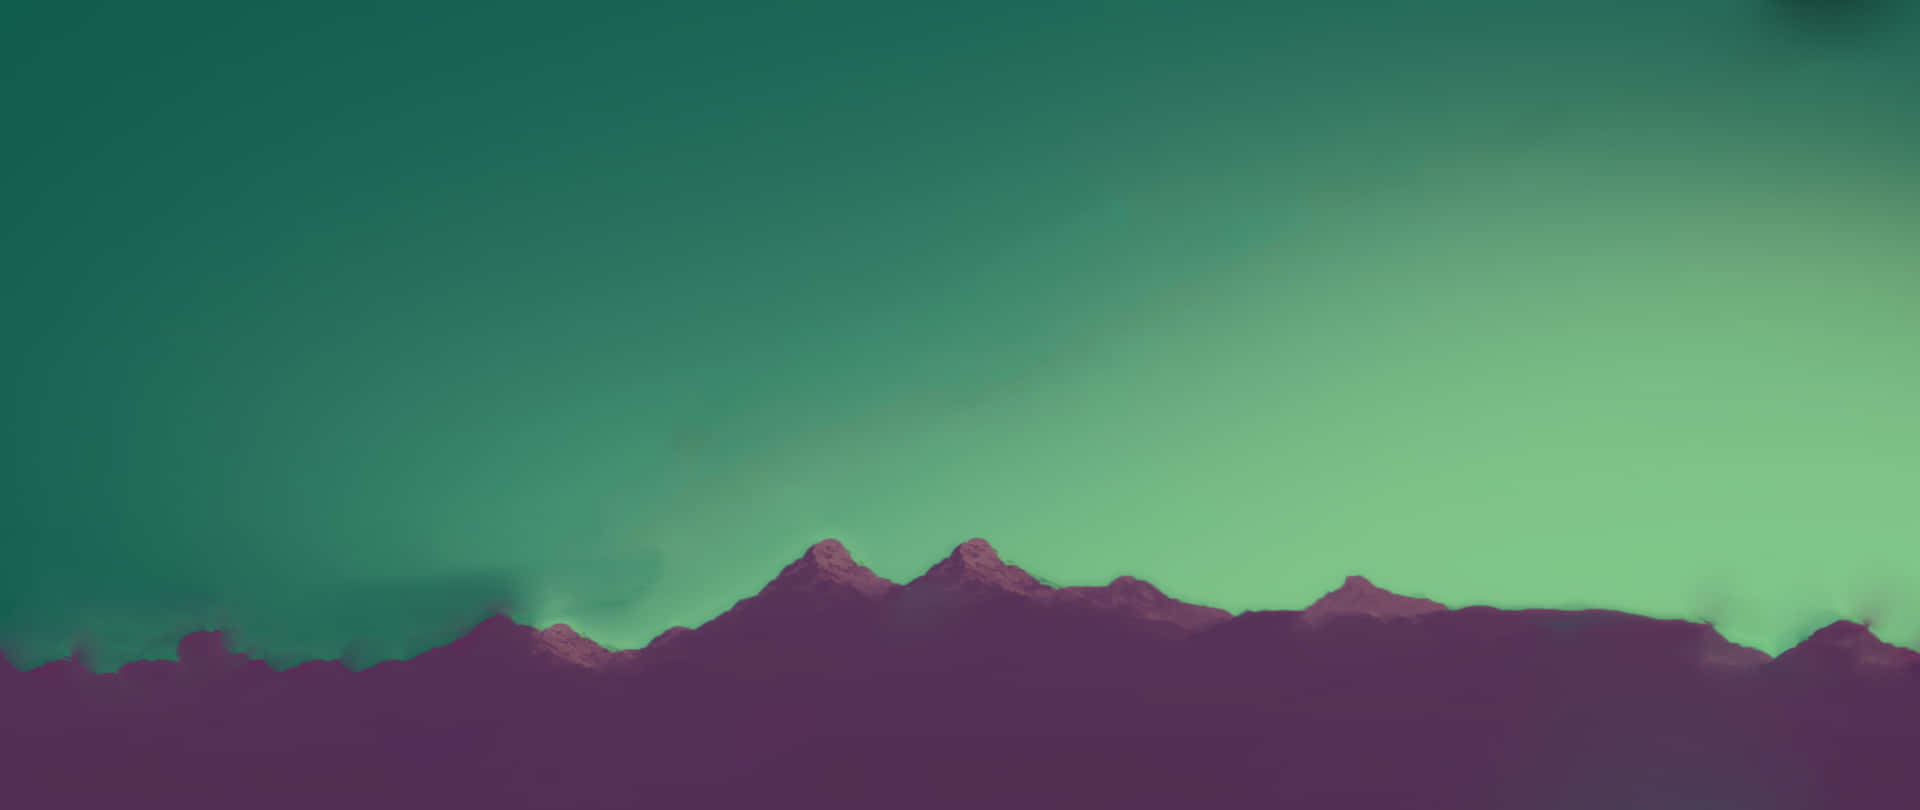 Siluetade Cordillera En Color Cian Estética Fondo de pantalla